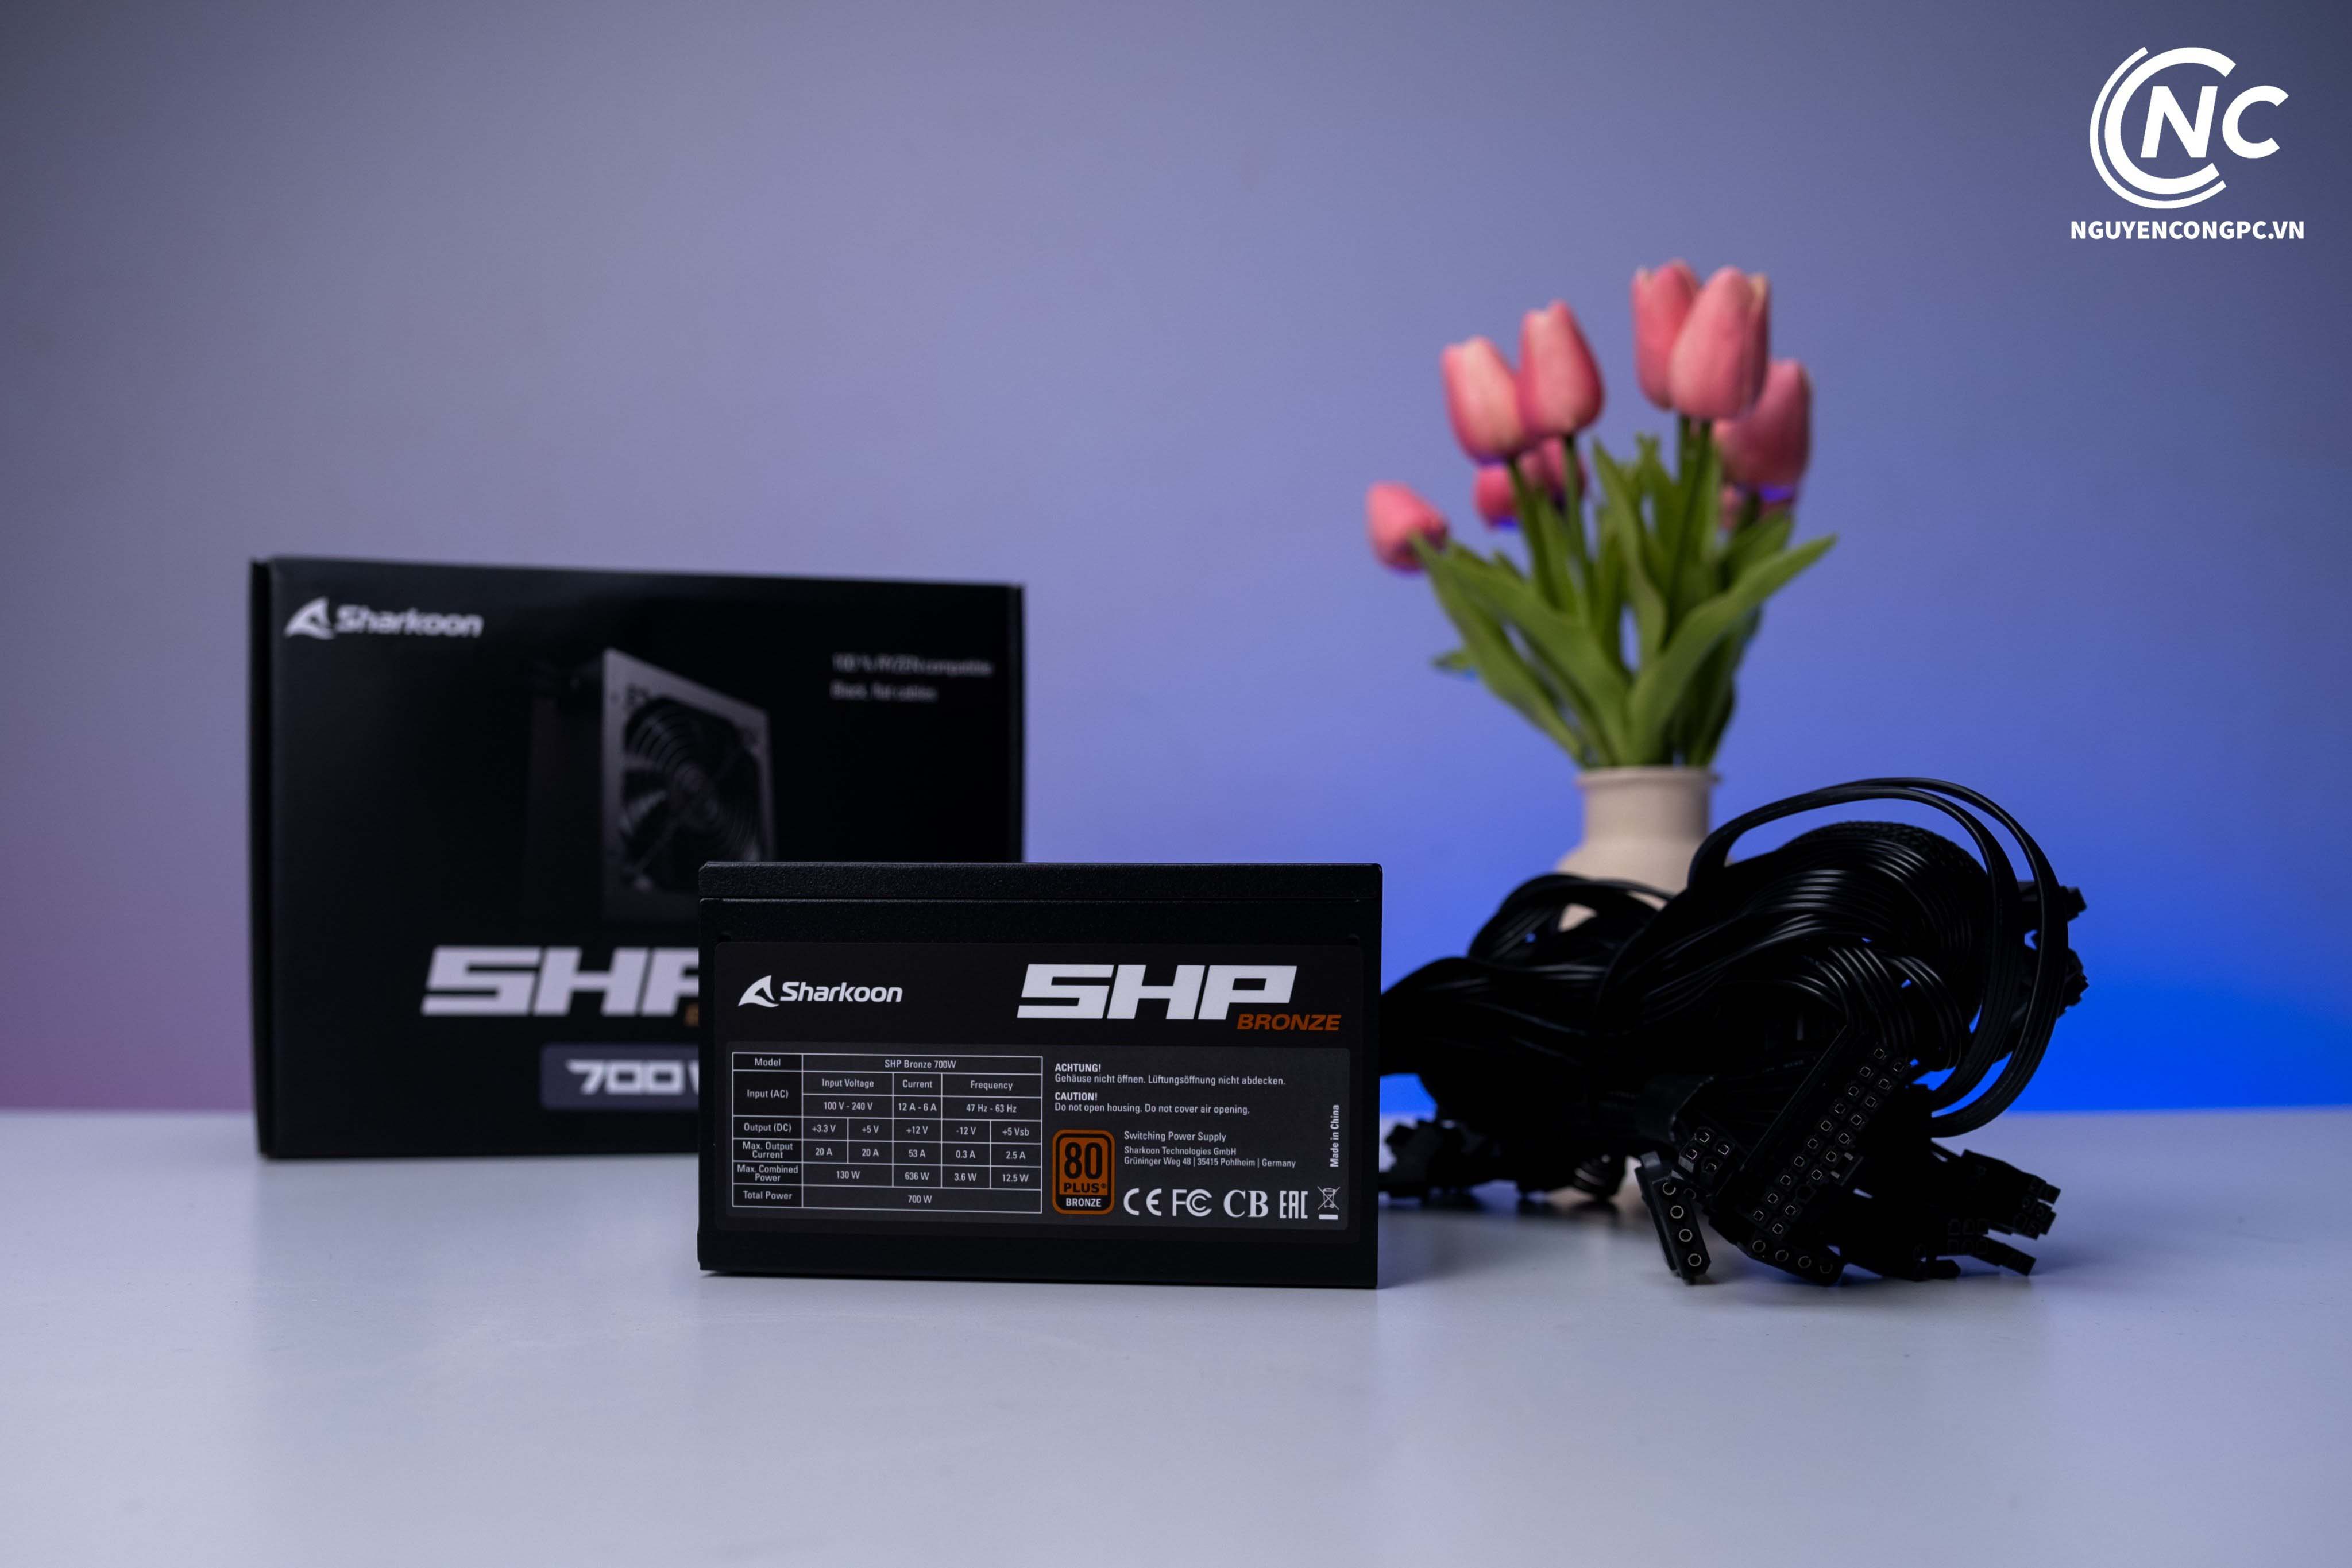 Đánh giá PSU Sharkoon SHP 700W Bronze – Tụ Nhật, hiệu suất tốt trong phân khúc giá